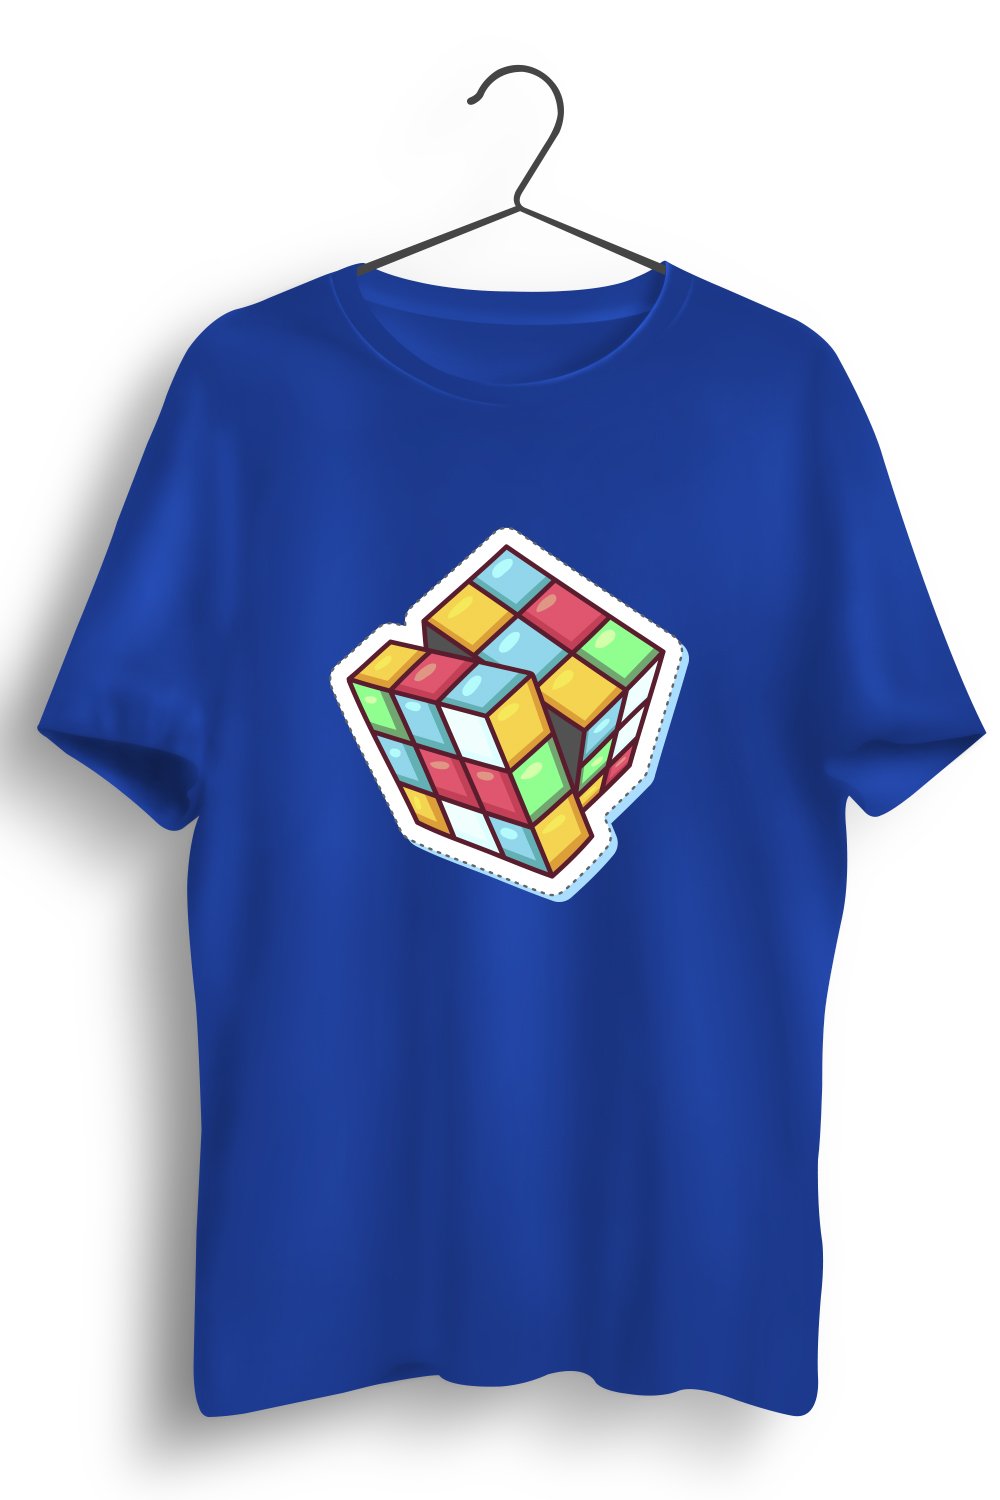 Rubiks Cube Printed Blue Tshirt